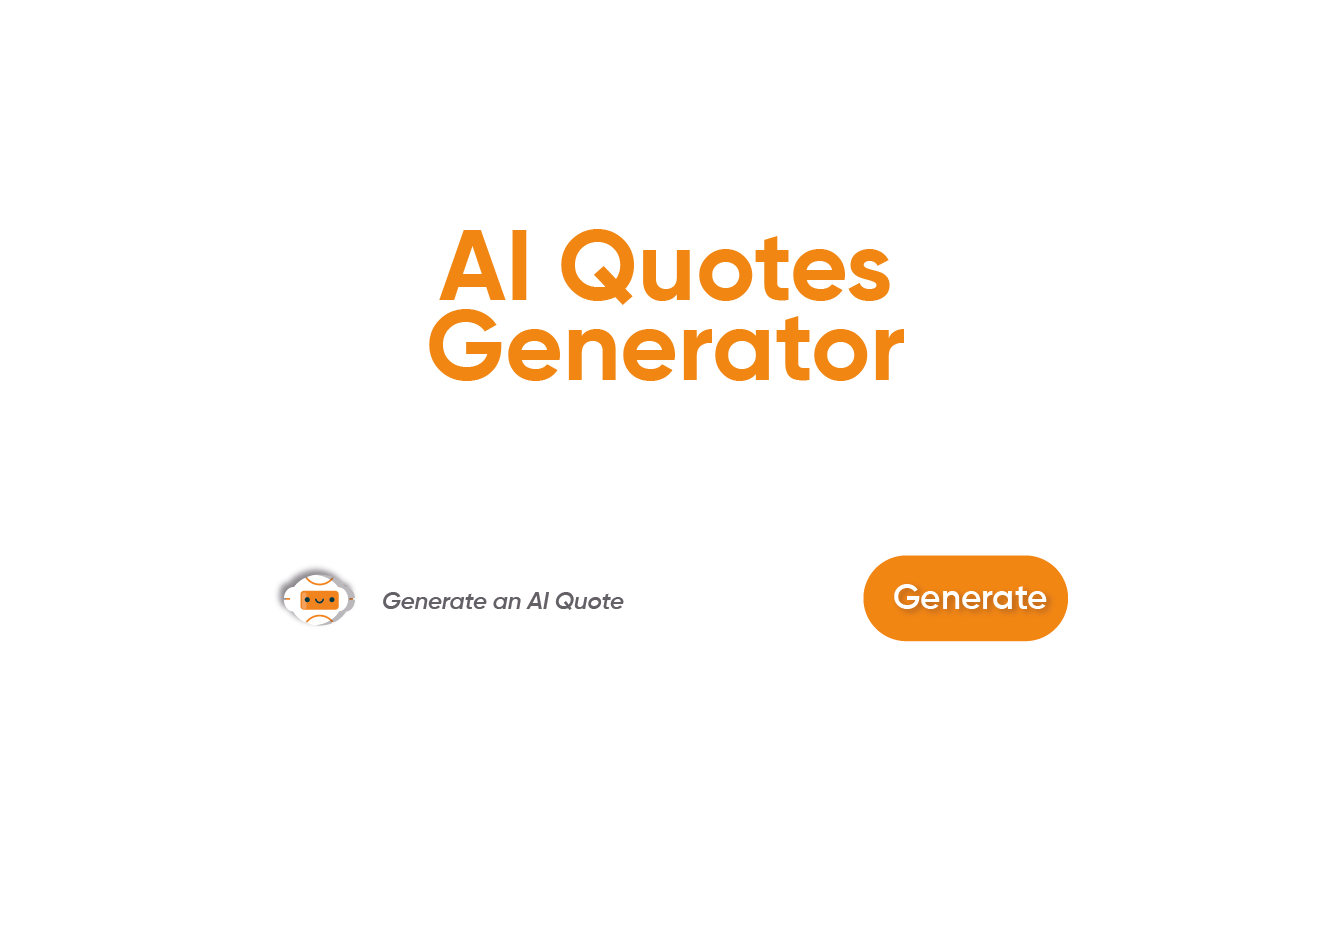 Ettvi’s AI Quote Generator Tool